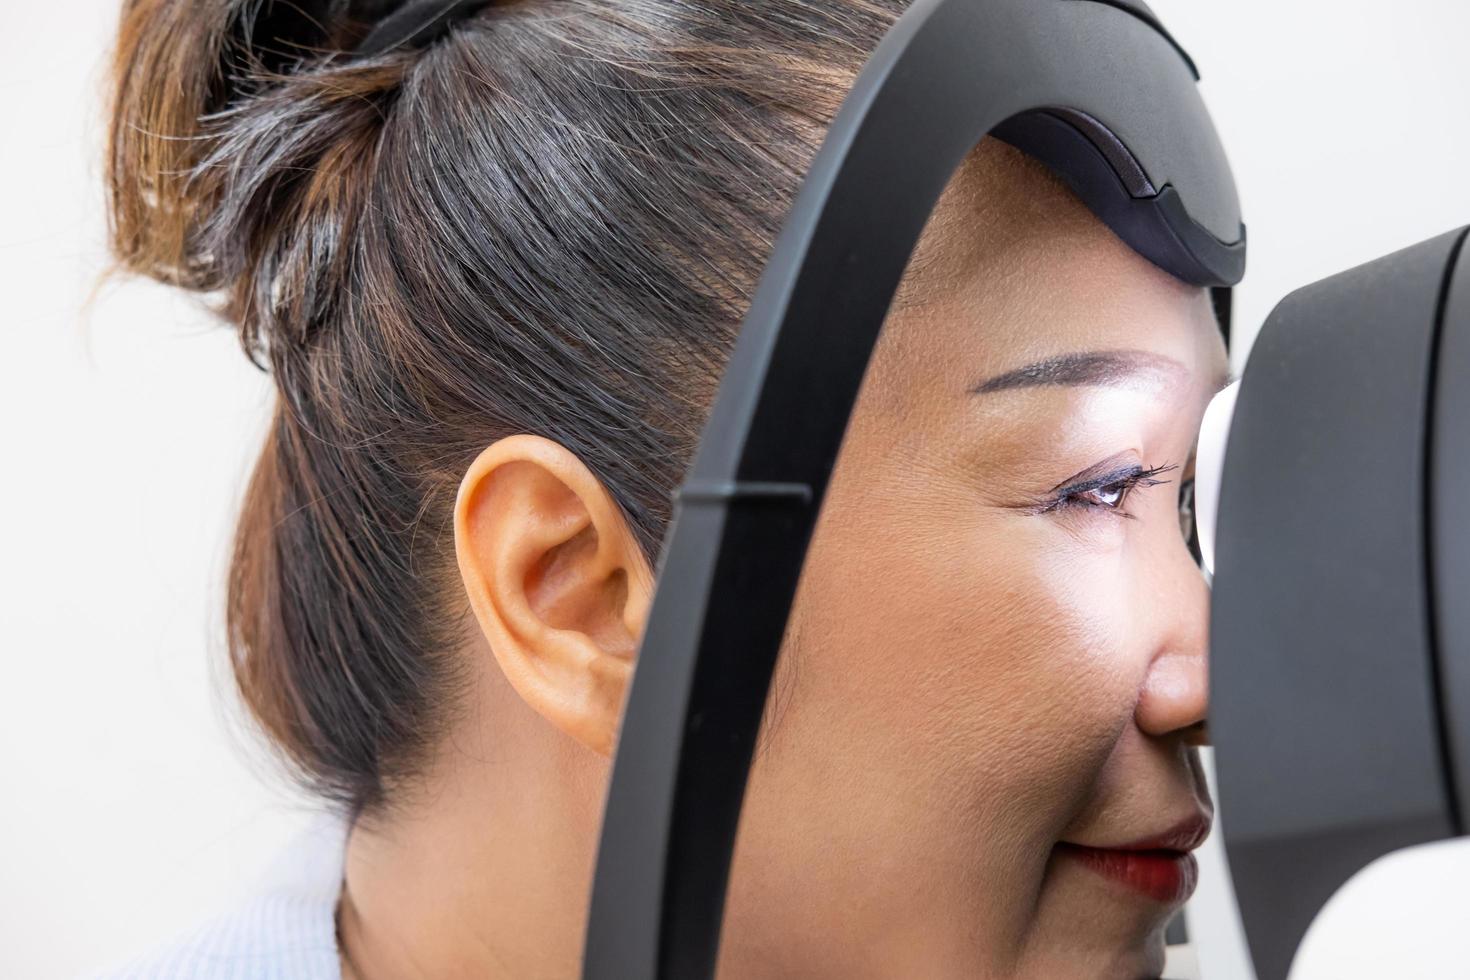 ältere asiatische Frauen an der Optometrie-Ausrüstung. während der Optometrist die subjektive Refraktion verwendet, um das Sehsystem des Auges älterer Patientenfrauen mit einer professionellen Maschine vor der Herstellung einer Brille zu untersuchen. foto